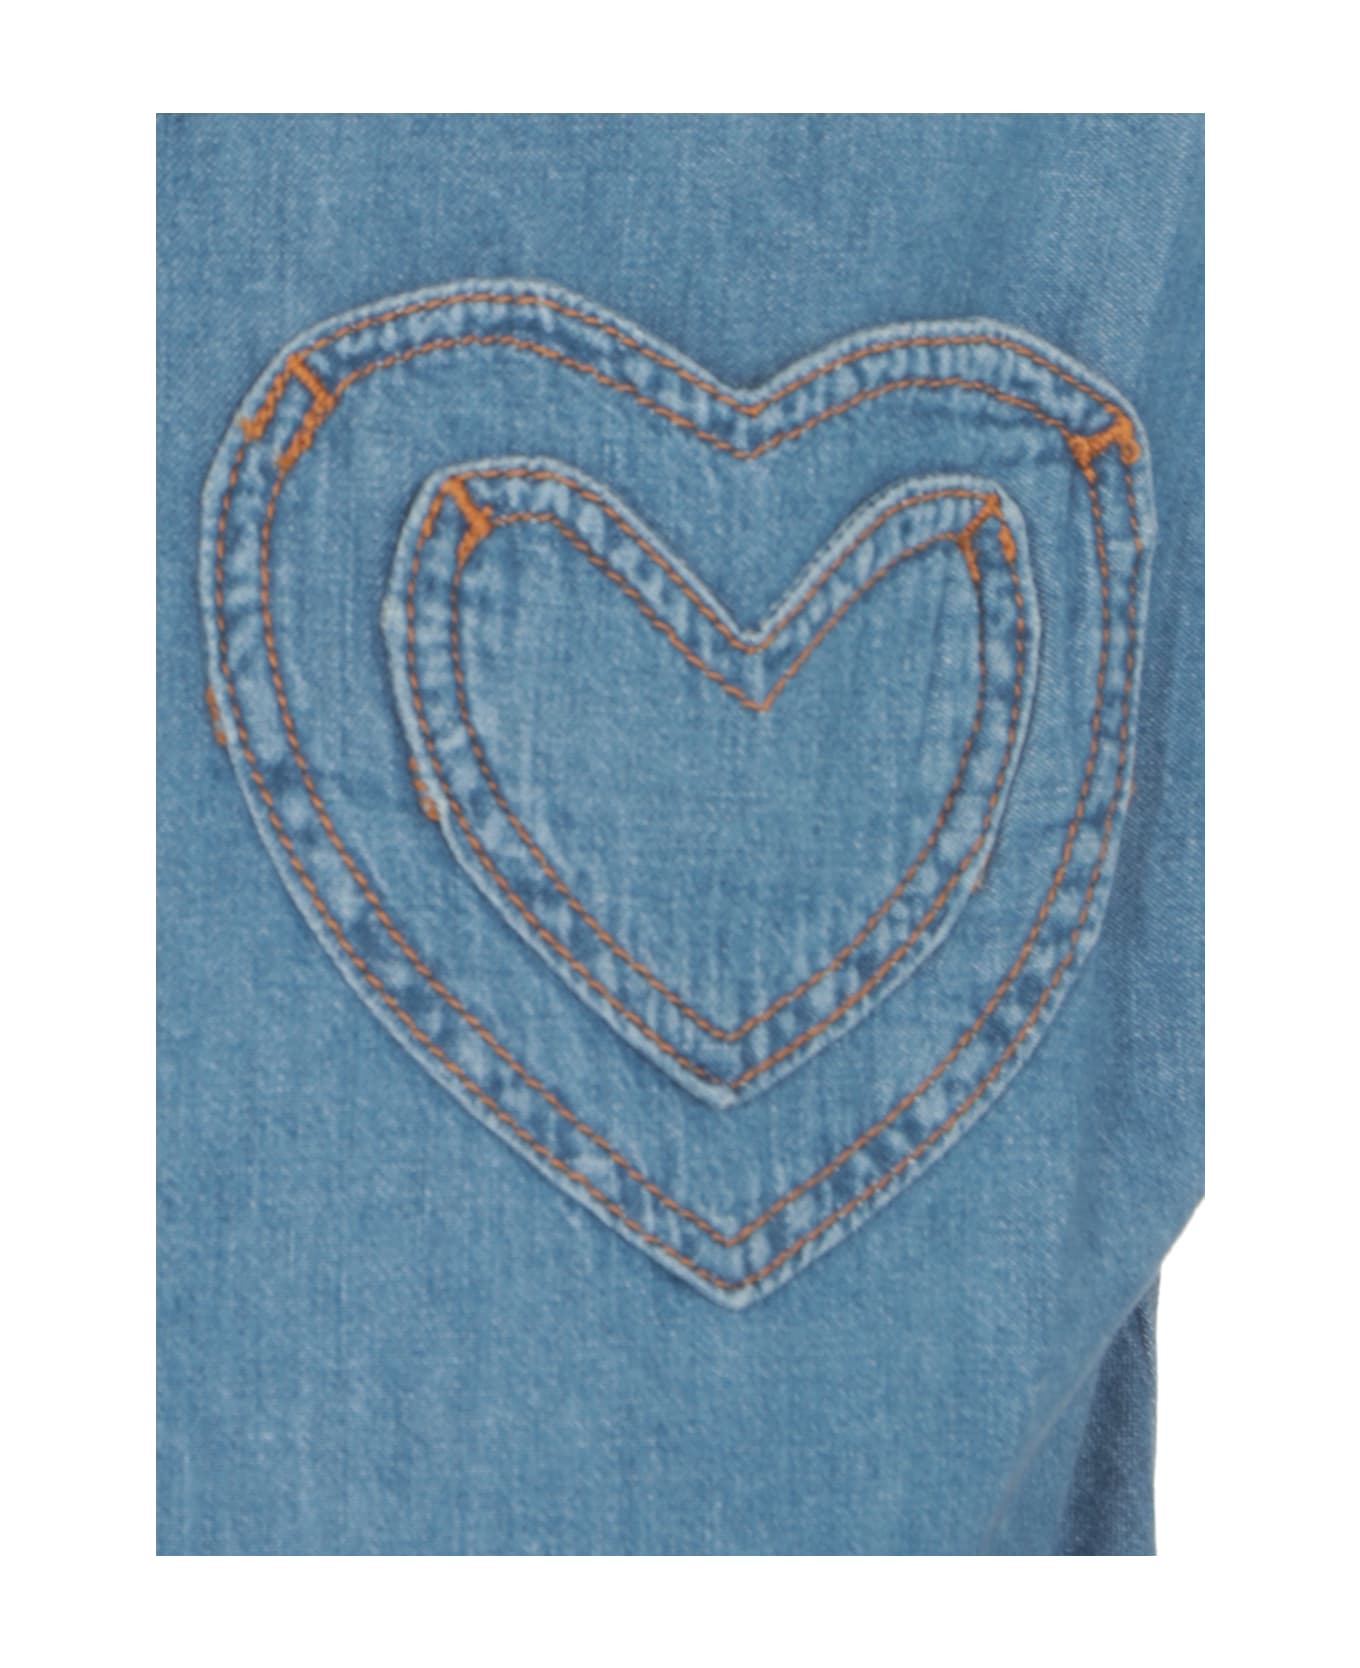 M05CH1N0 Jeans Heart Pocket Shirt - Light Blue